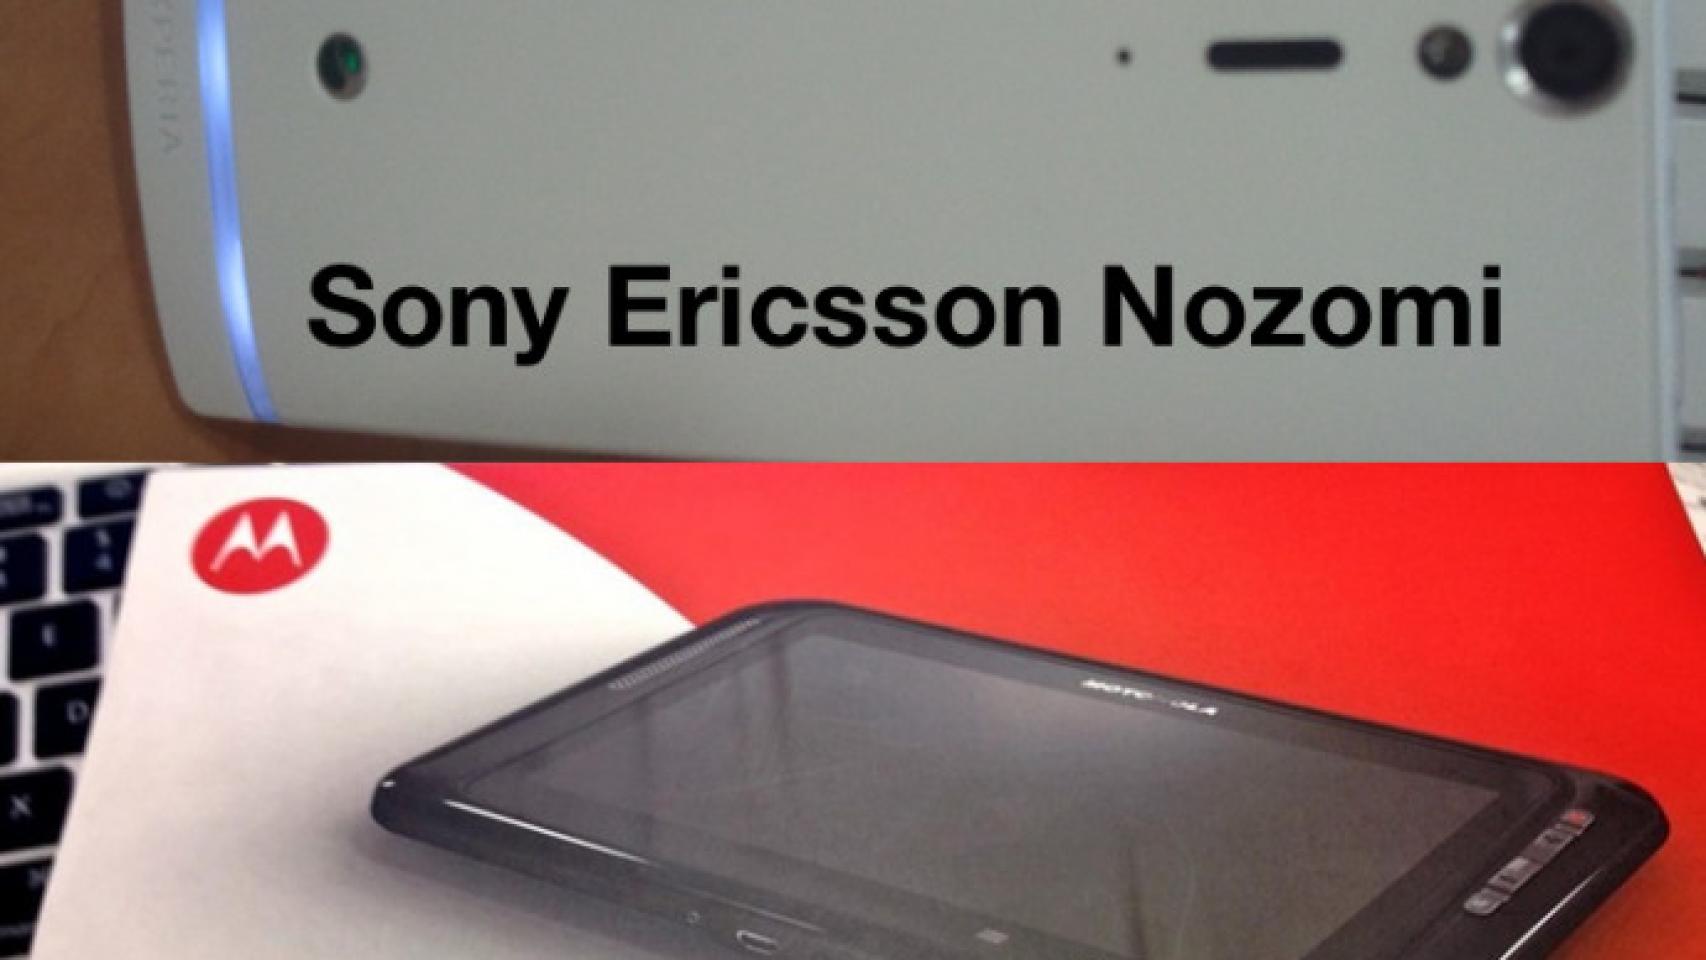 Sony Ericsson Nozomi y Motorola Corvair, Super android y mini tablet por venir